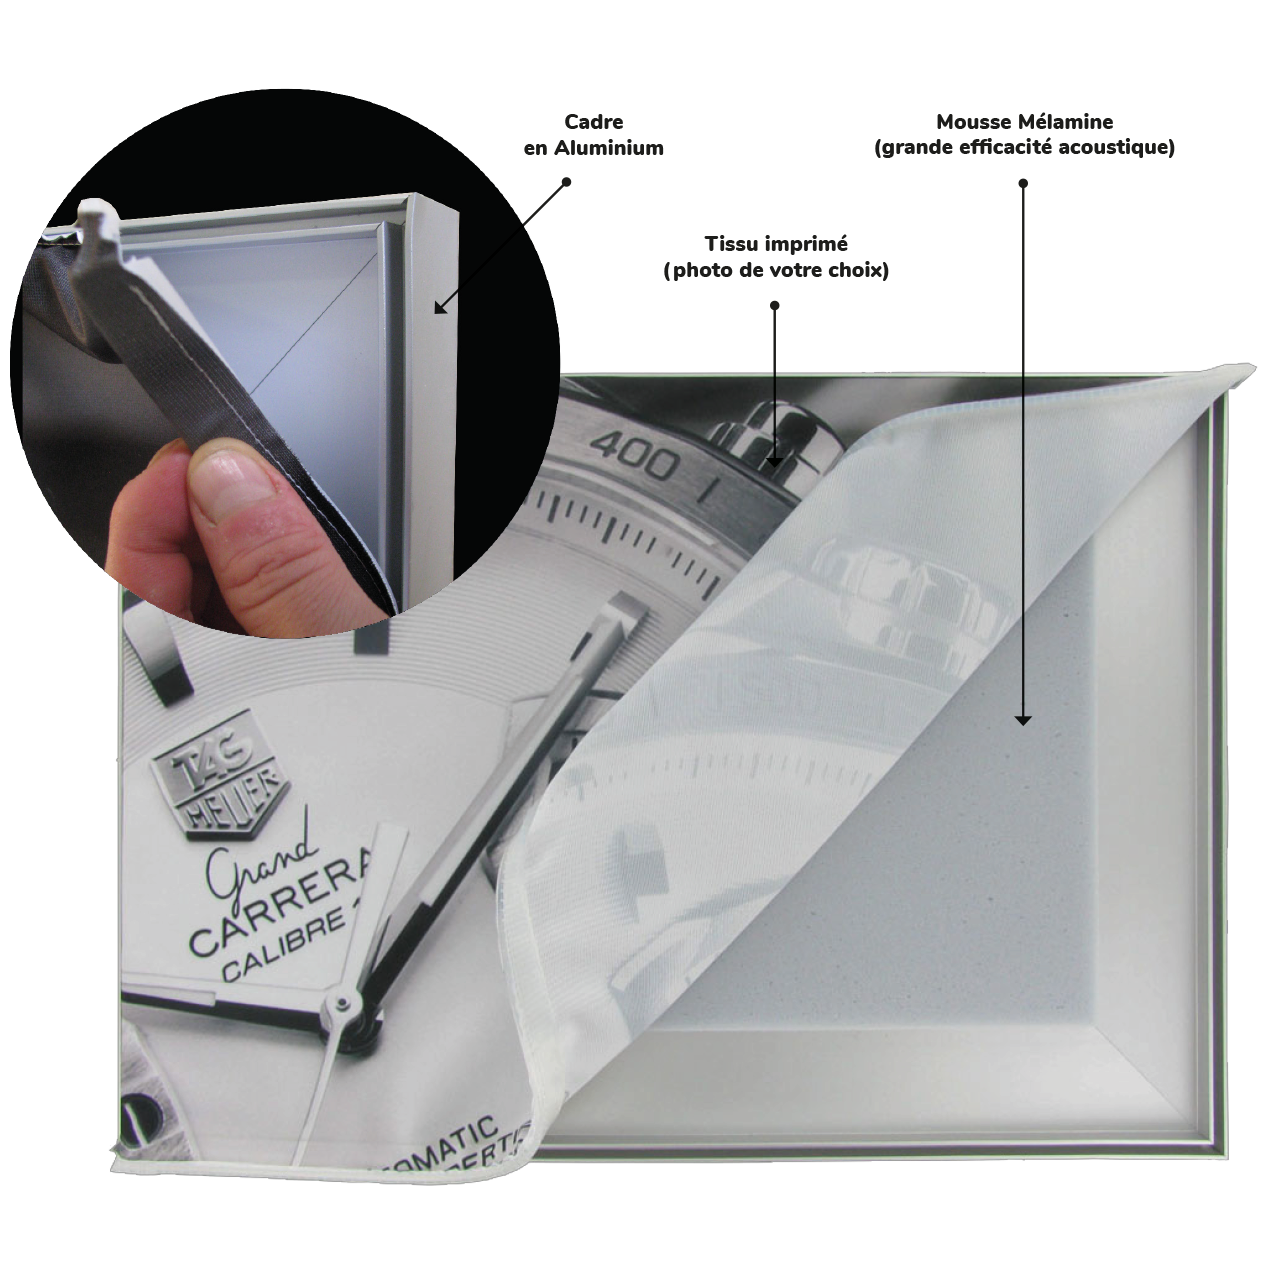 Mise en place du visuel imprimé dans le cadre aluminium Solutions Élastomères